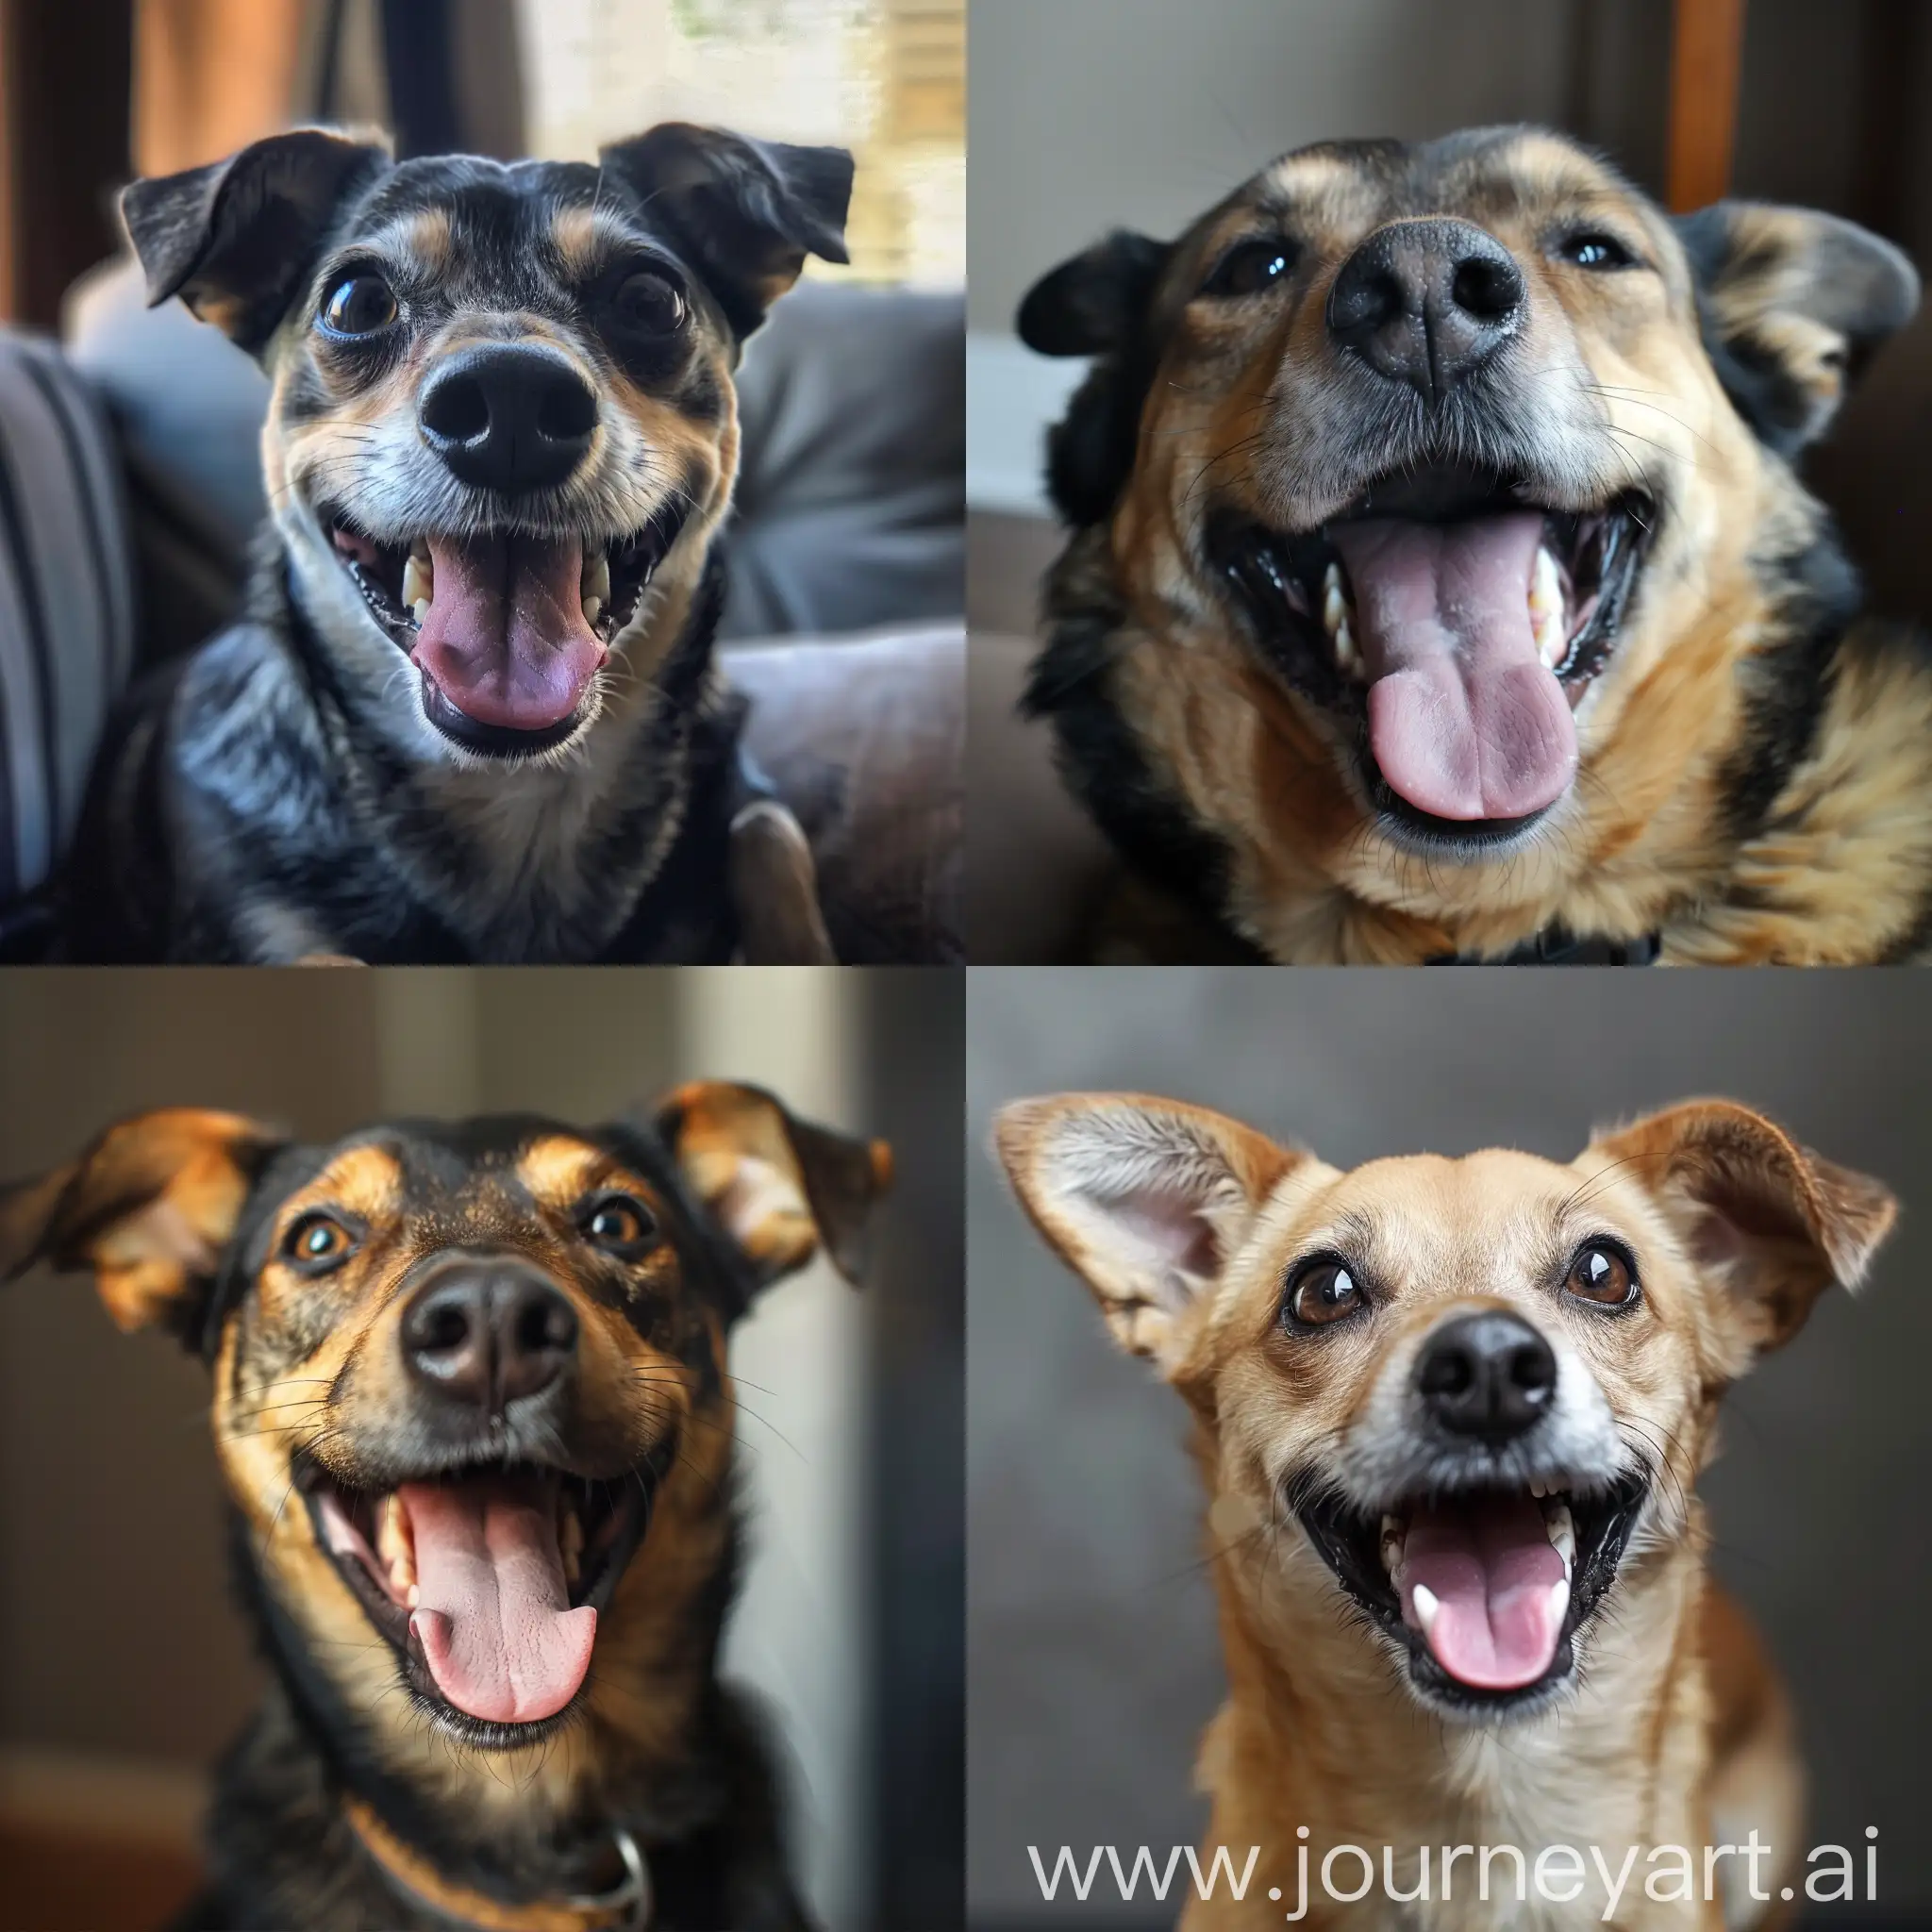 Joyful-Dog-Playing-Outdoors